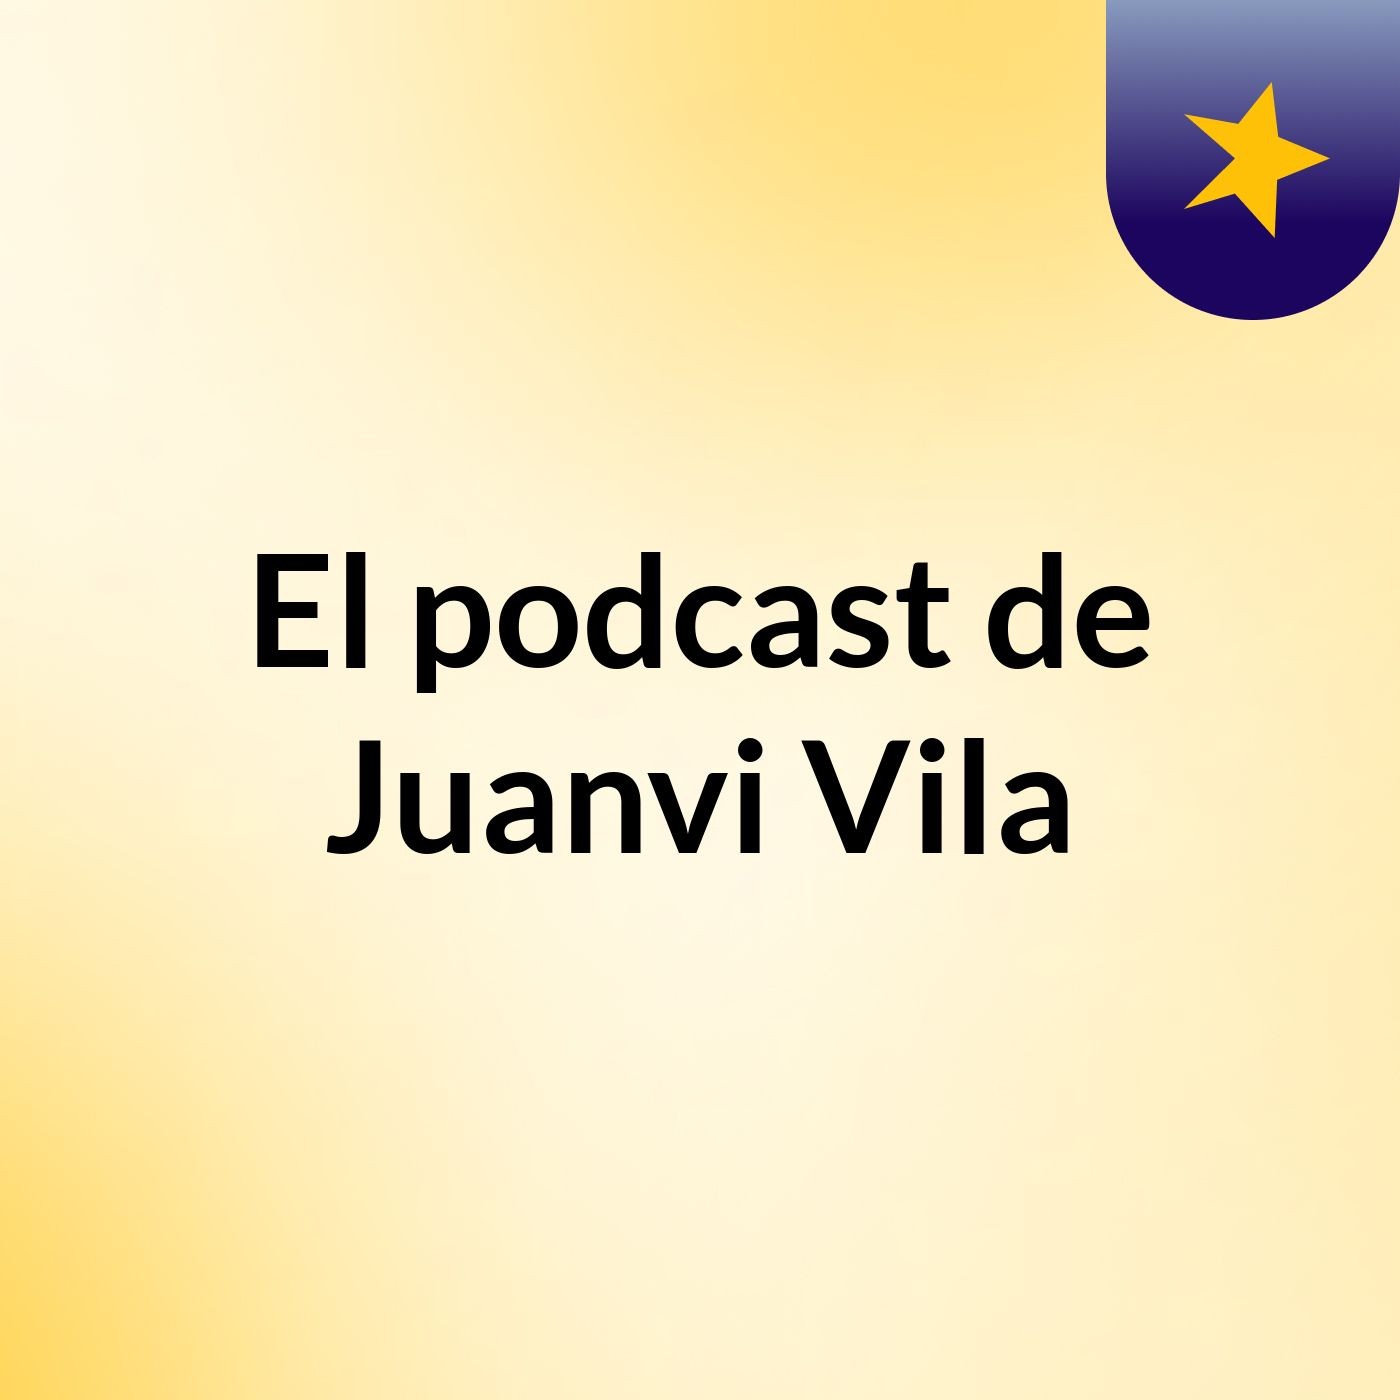 El podcast de Juanvi Vila